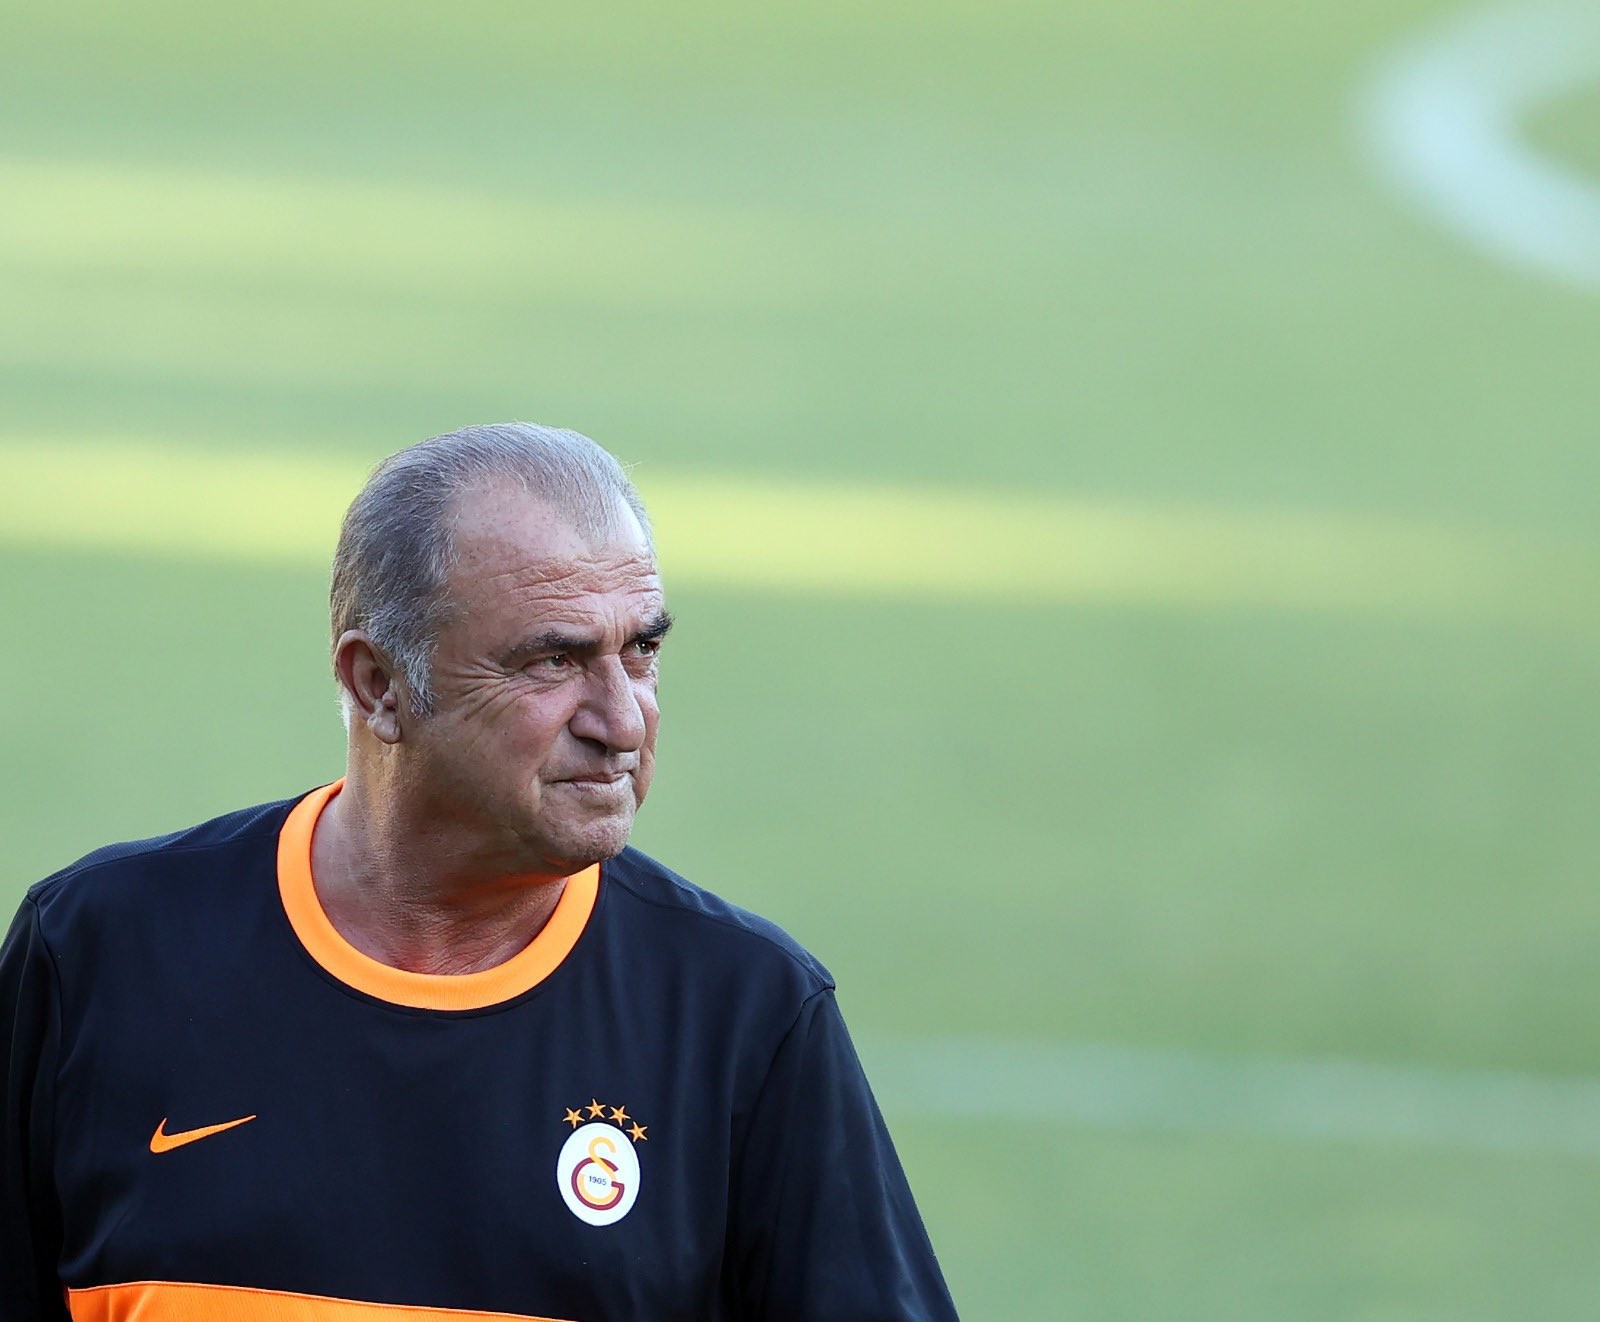 Son dakika spor haberleri: Galatasaray transfer çalışmalarını sürdürüyor! Nicolae Stanciu, Arturo Vidal, Gedson Fernandes... | GS haberleri